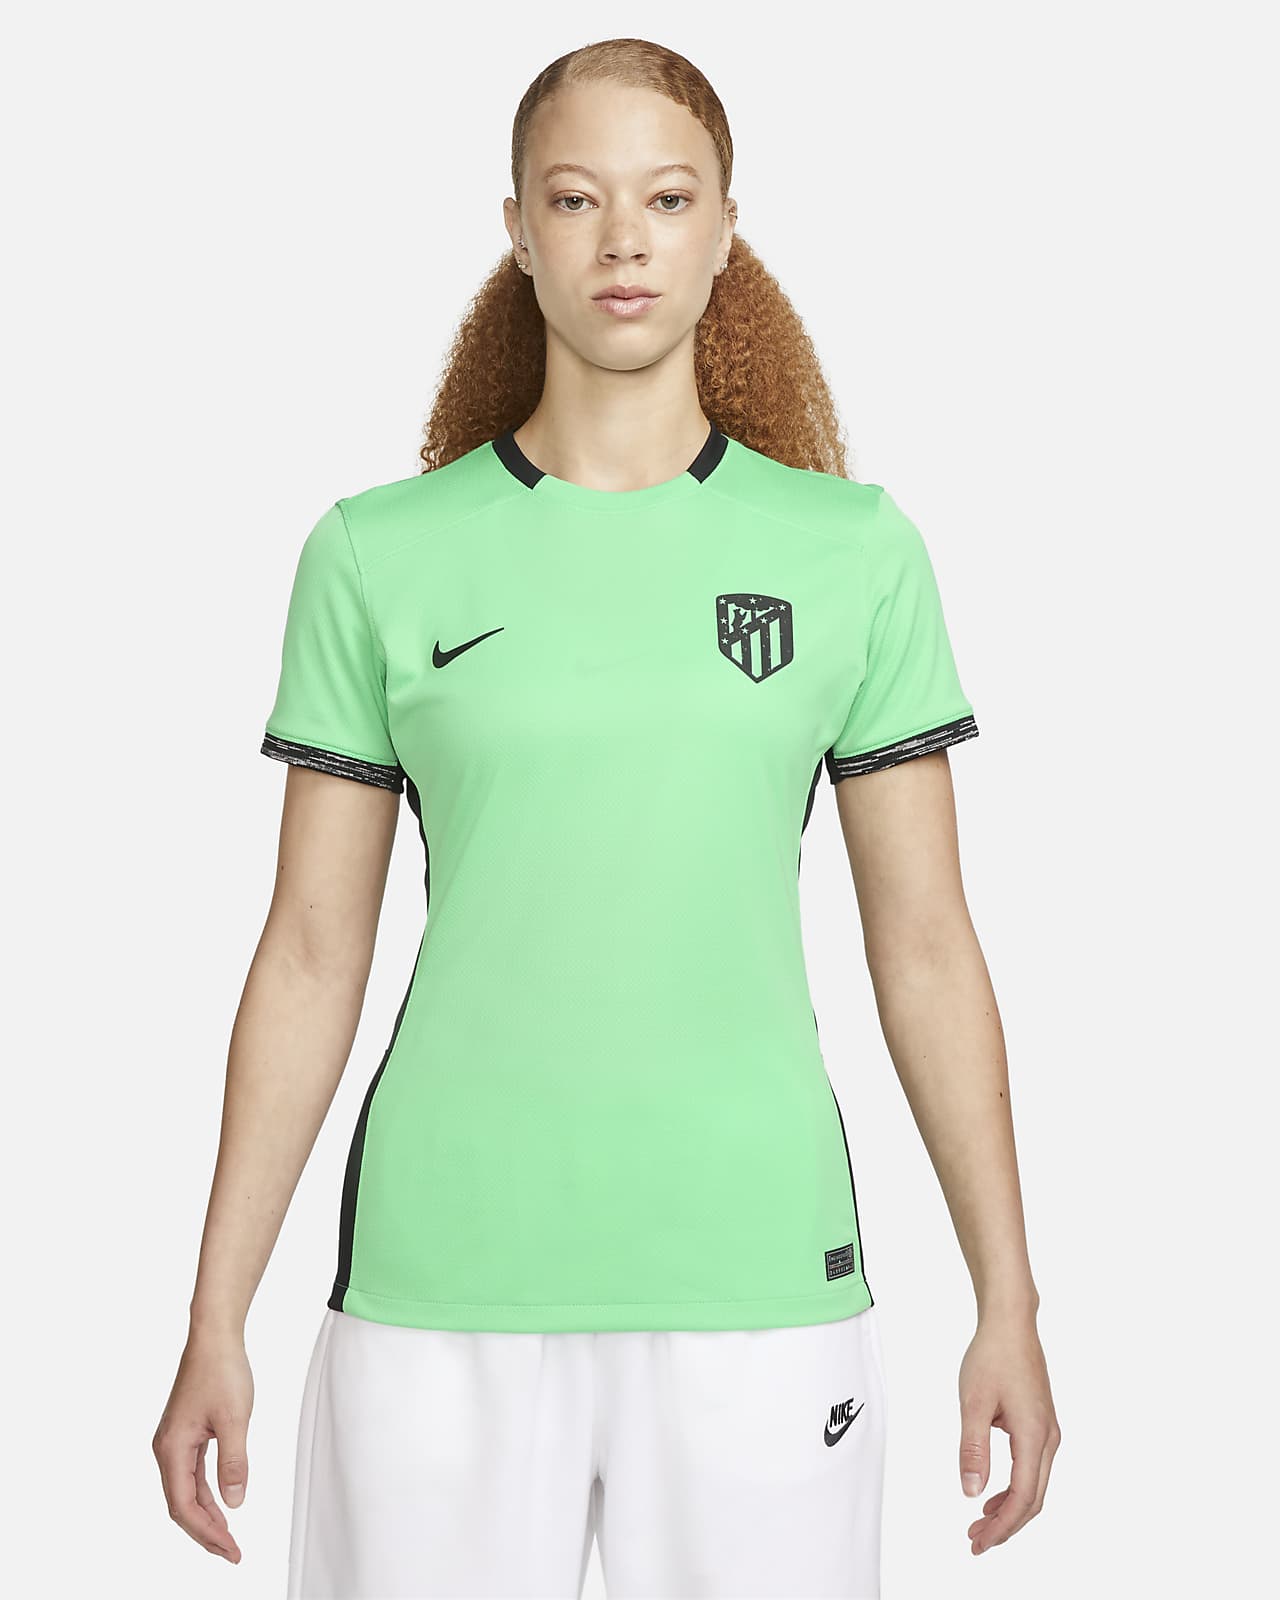 Γυναικεία ποδοσφαιρική φανέλα Nike Dri-FIT εναλλακτικής εμφάνισης Ατλέτικο Μαδρίτης 2023/24 Stadium